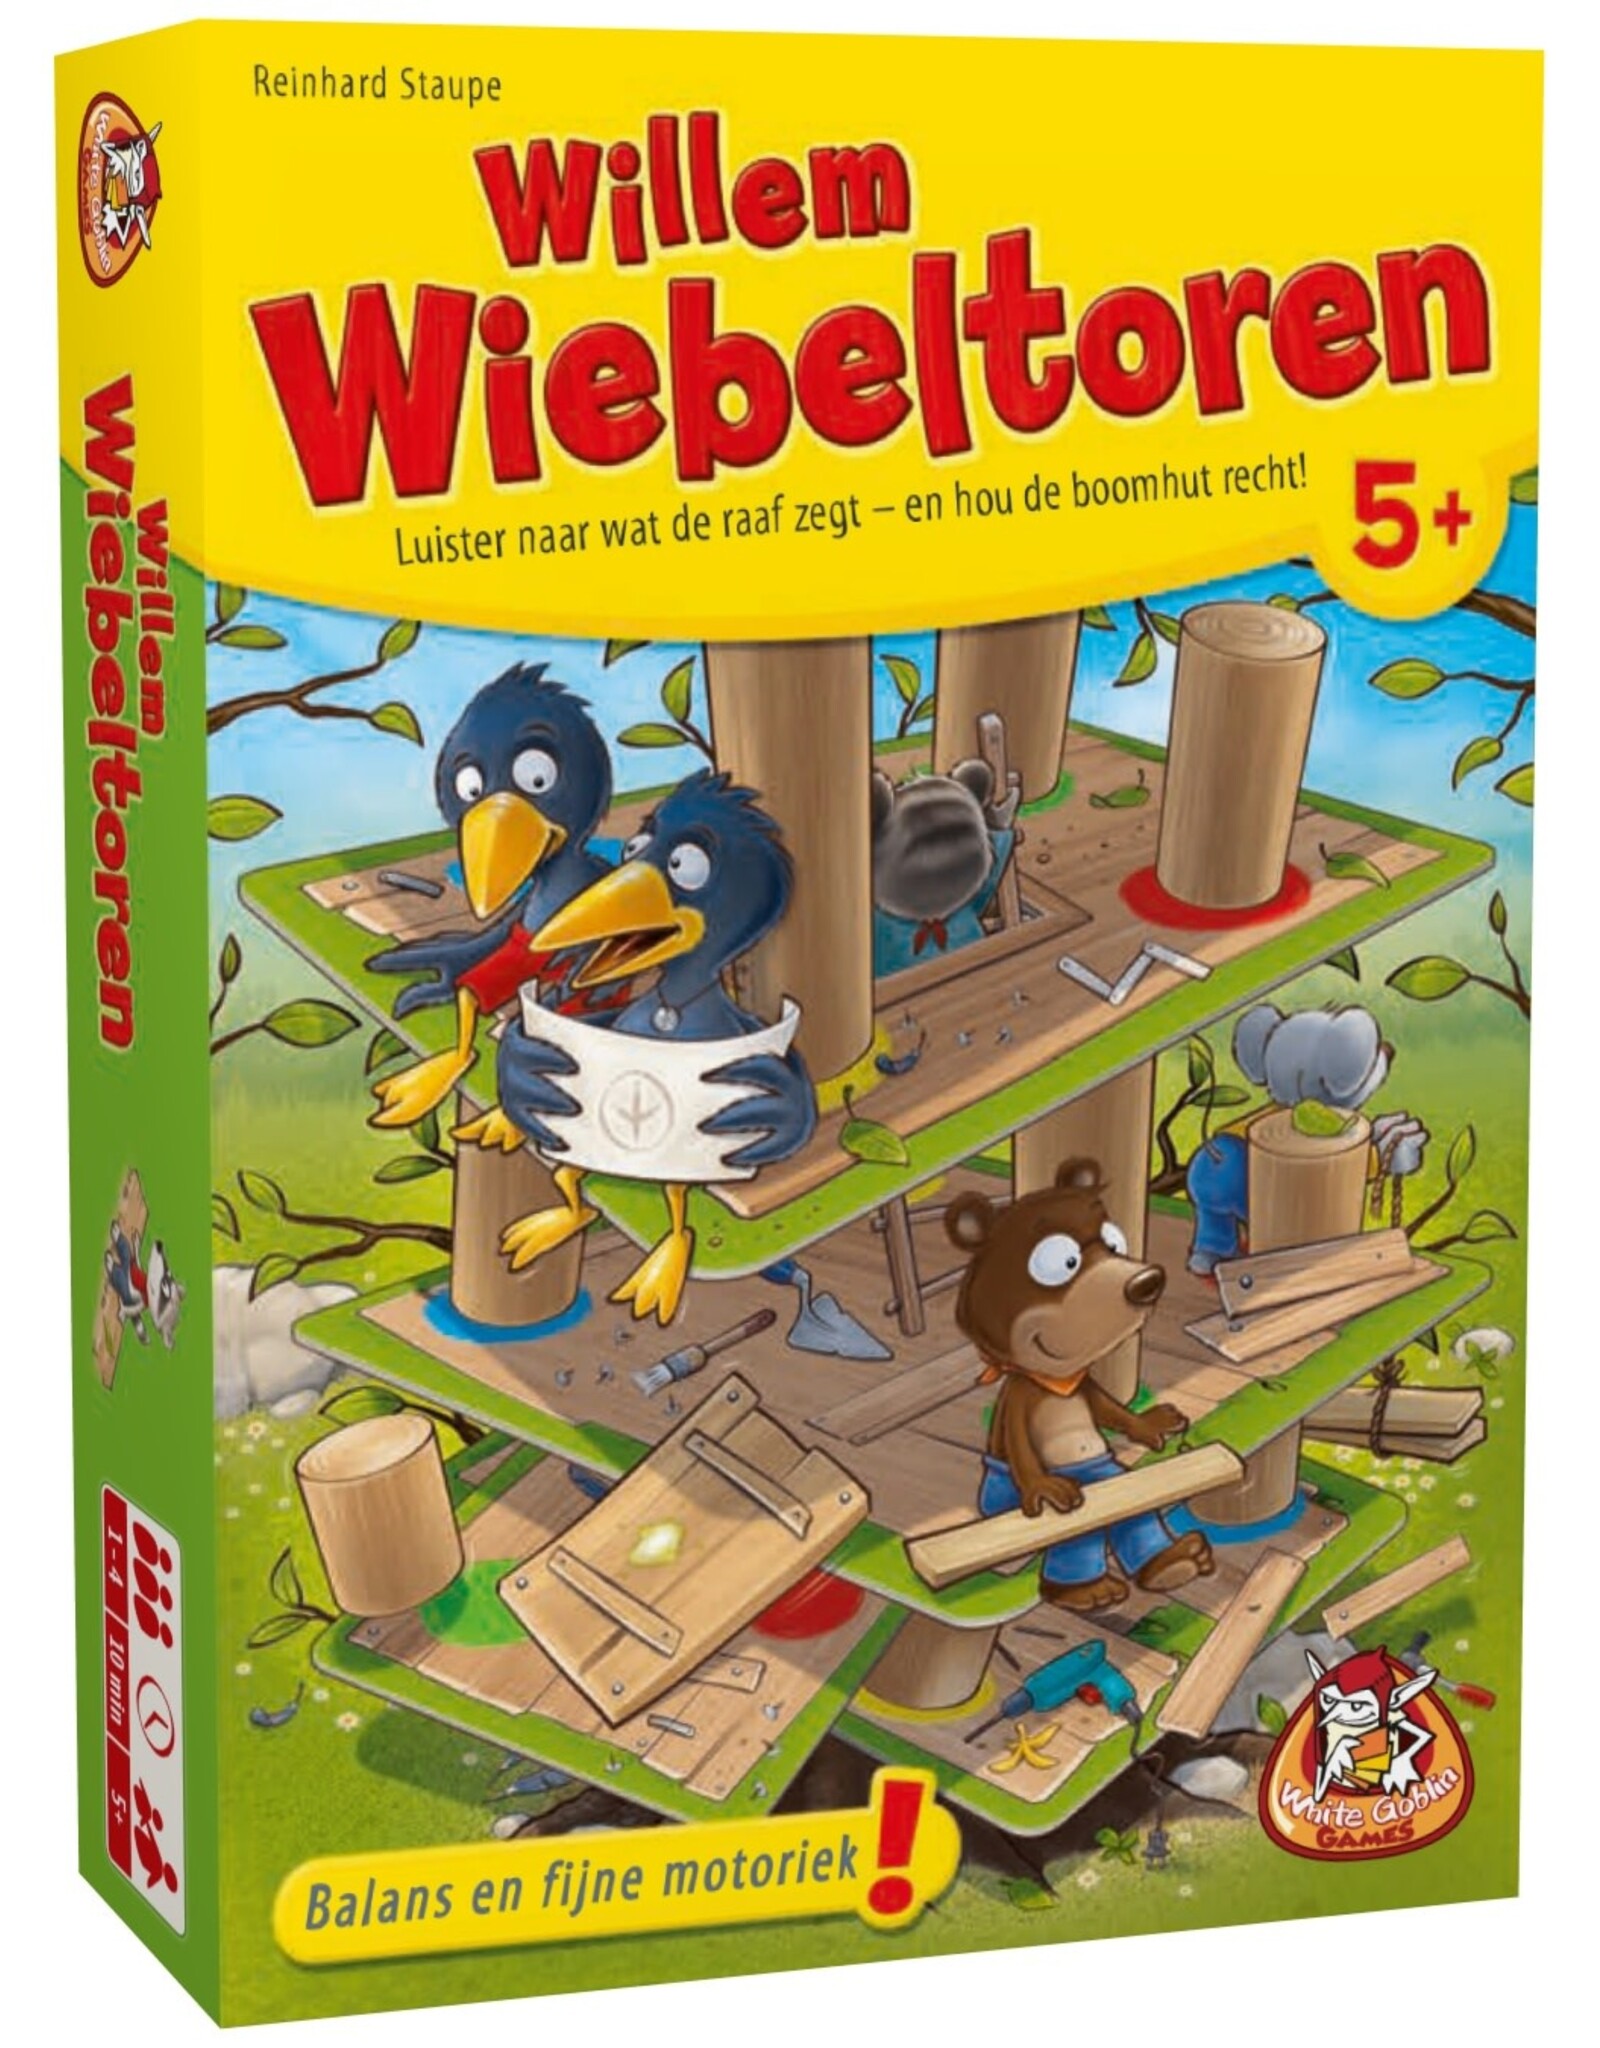 White Goblin Games Willem Wiebeltoren